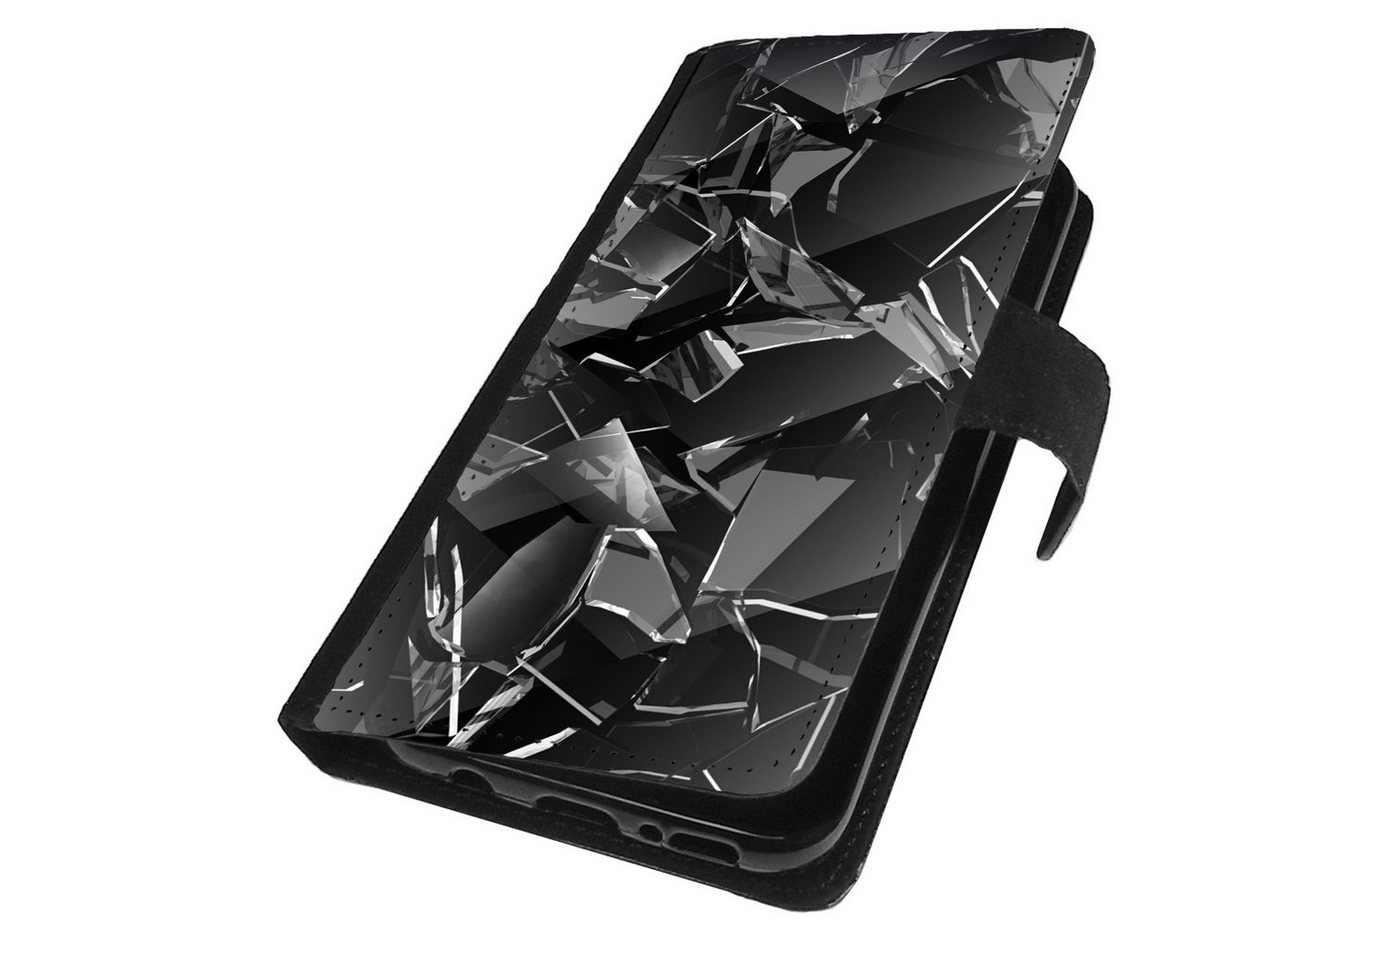 Traumhuelle Handyhülle MOTIV 342 Hülle für Samsung Galaxy A7 A6 A5 A3 A80 J7 J6 J5 J3 S6 S5, S4 S3 Mini Edge Handy Tasche Klapp Etui Case Schutz Cover Silikon von Traumhuelle